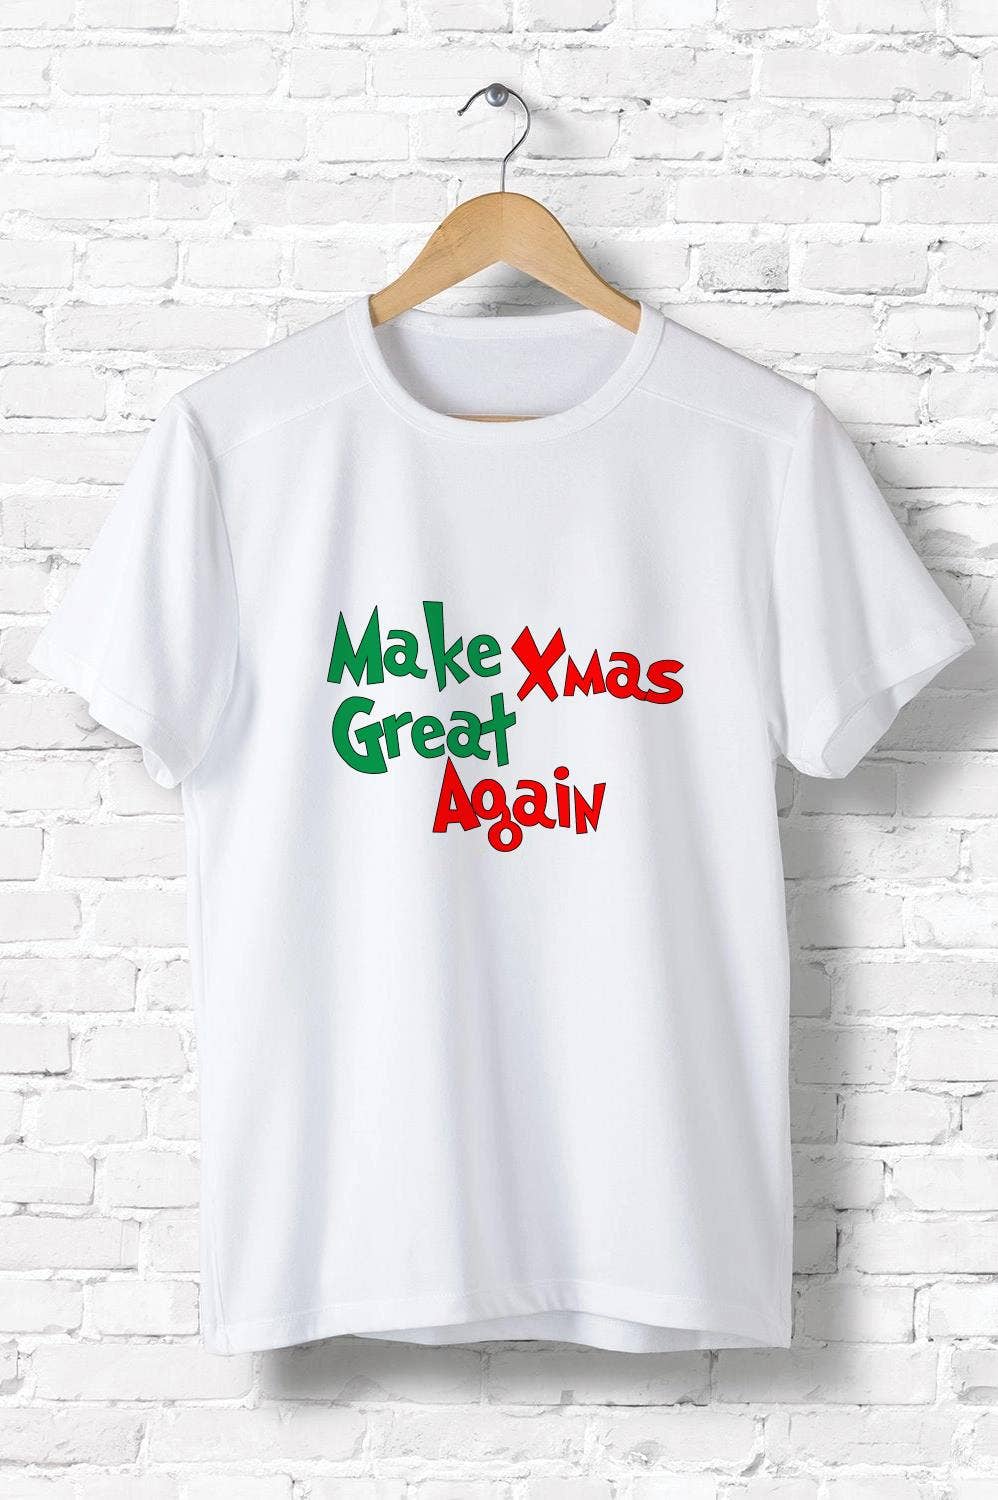 Make Christmas Great Again Shirt, Funny Christmas Shirt